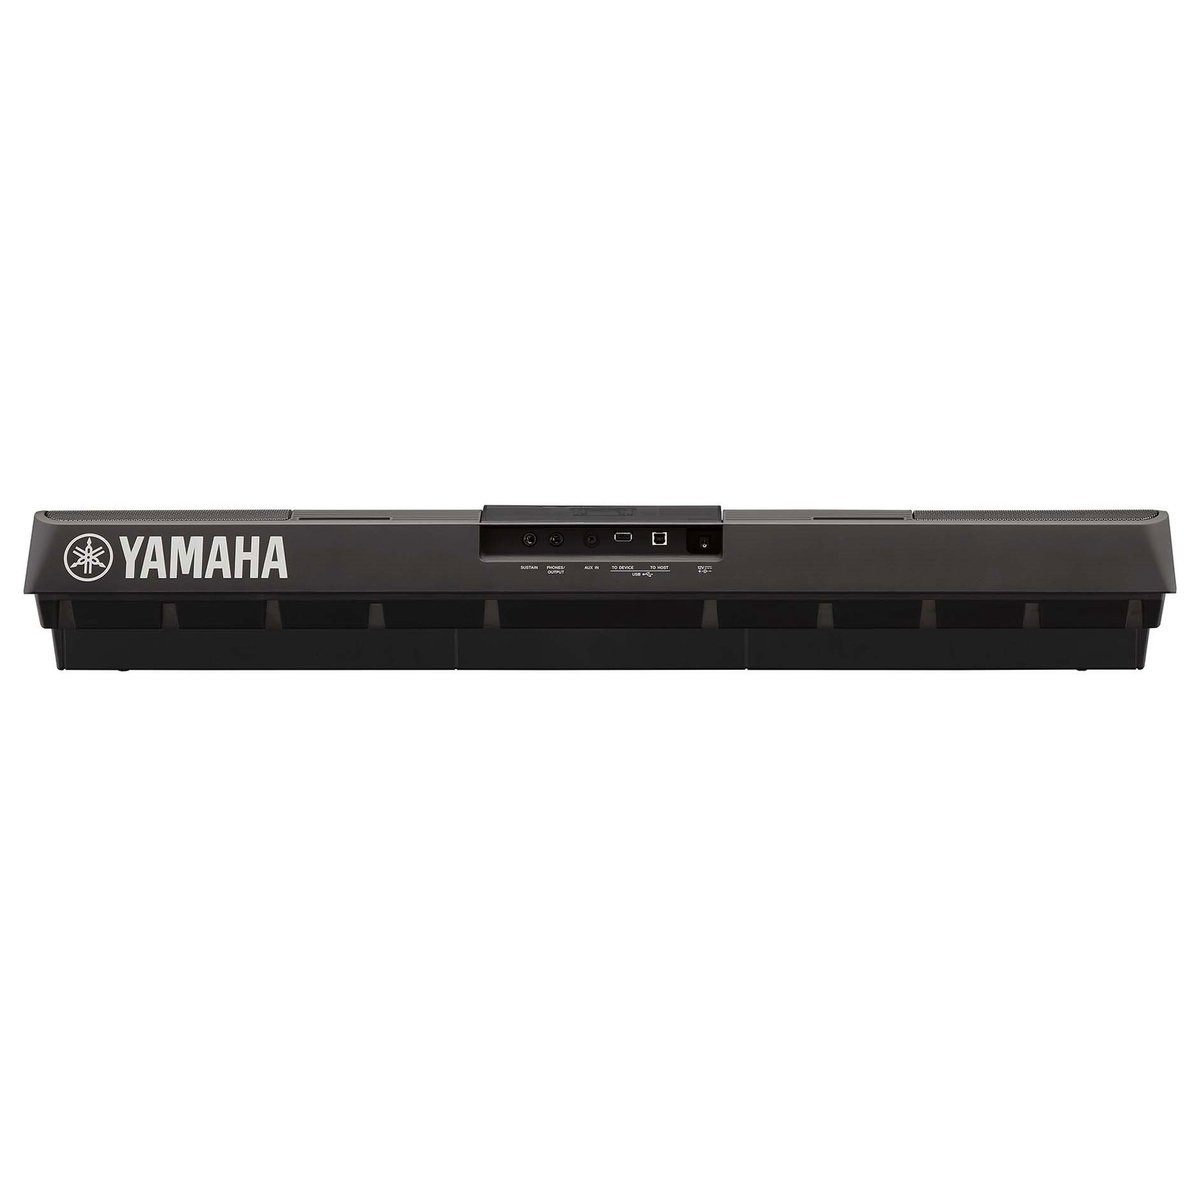 Yamaha Keyboard PSR-E463